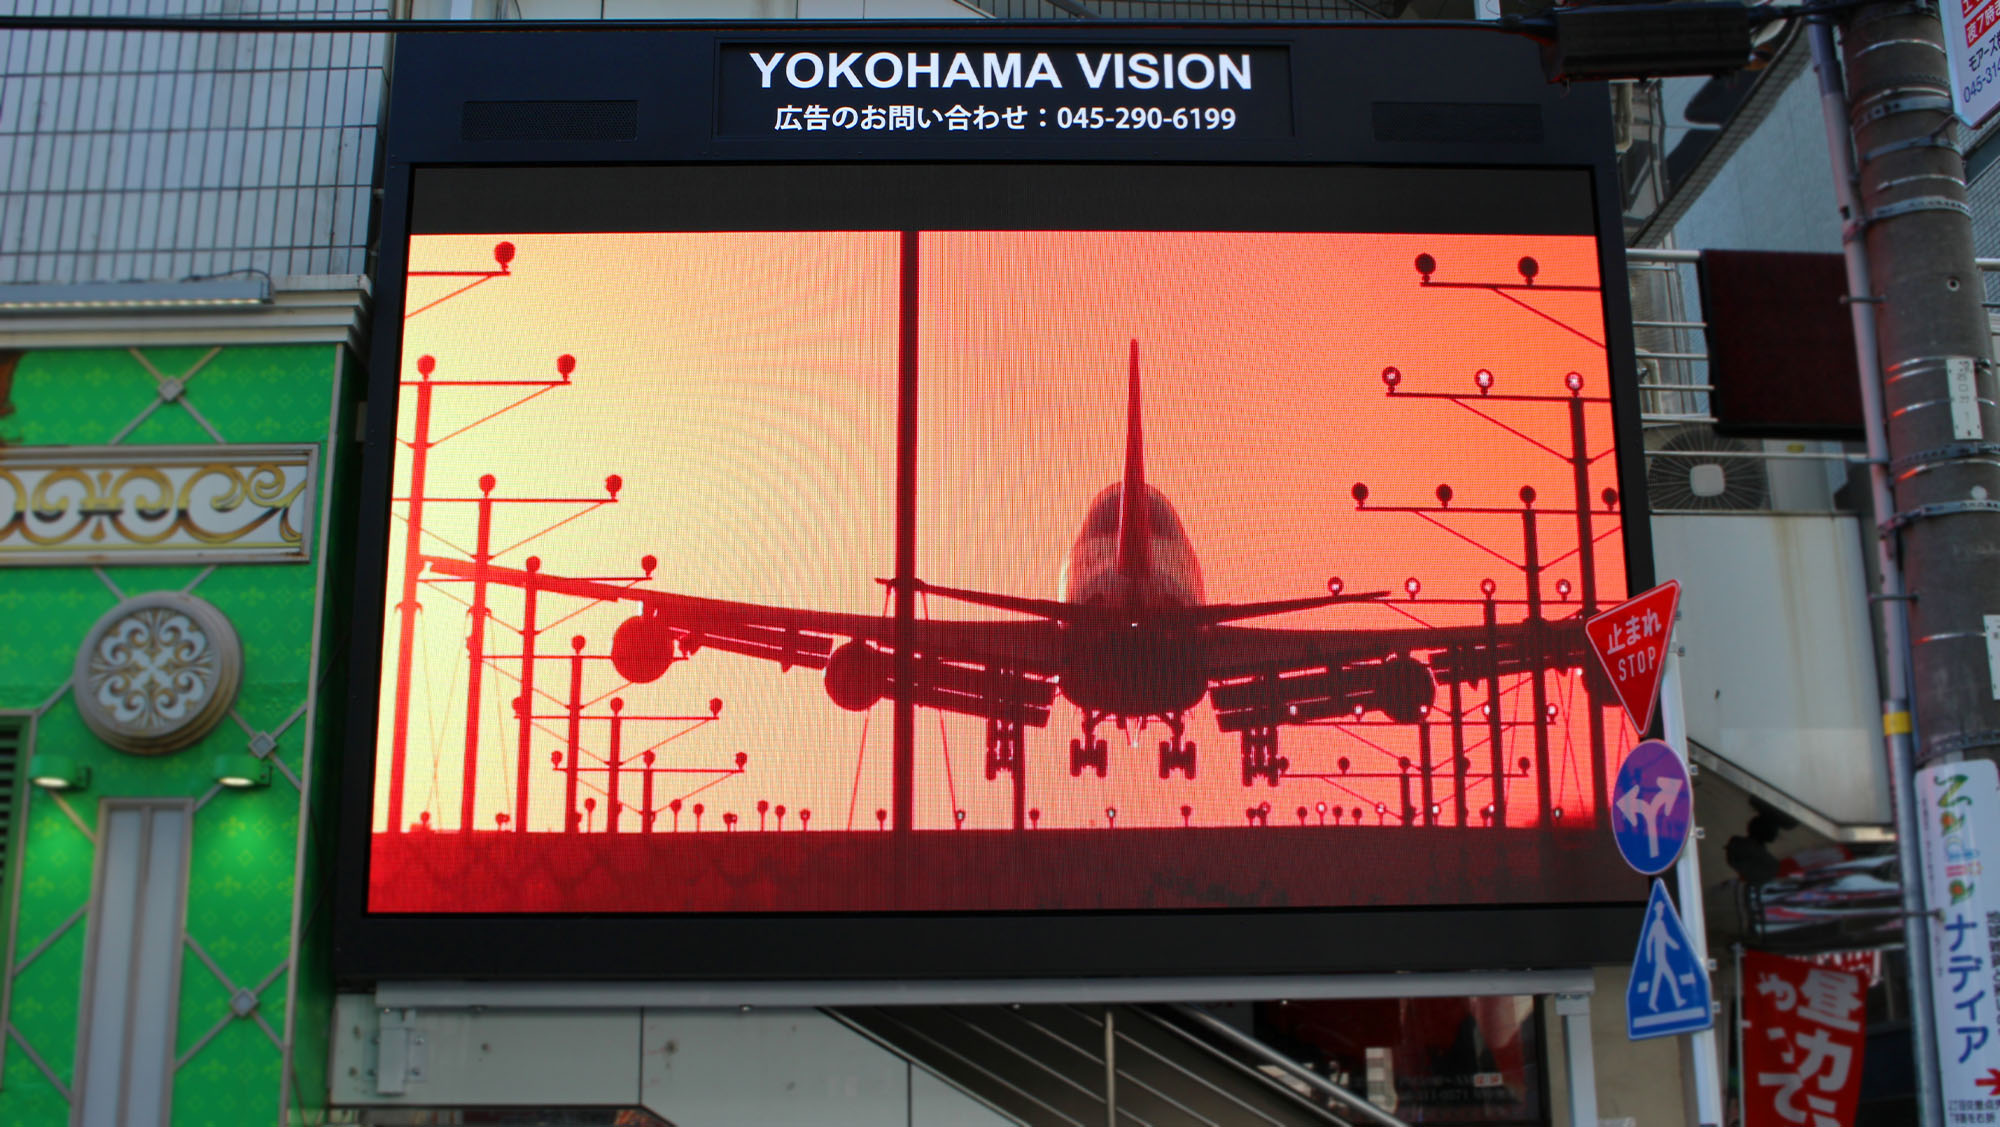 YOKOHAMA VISION / LED屋外広告ビジョン